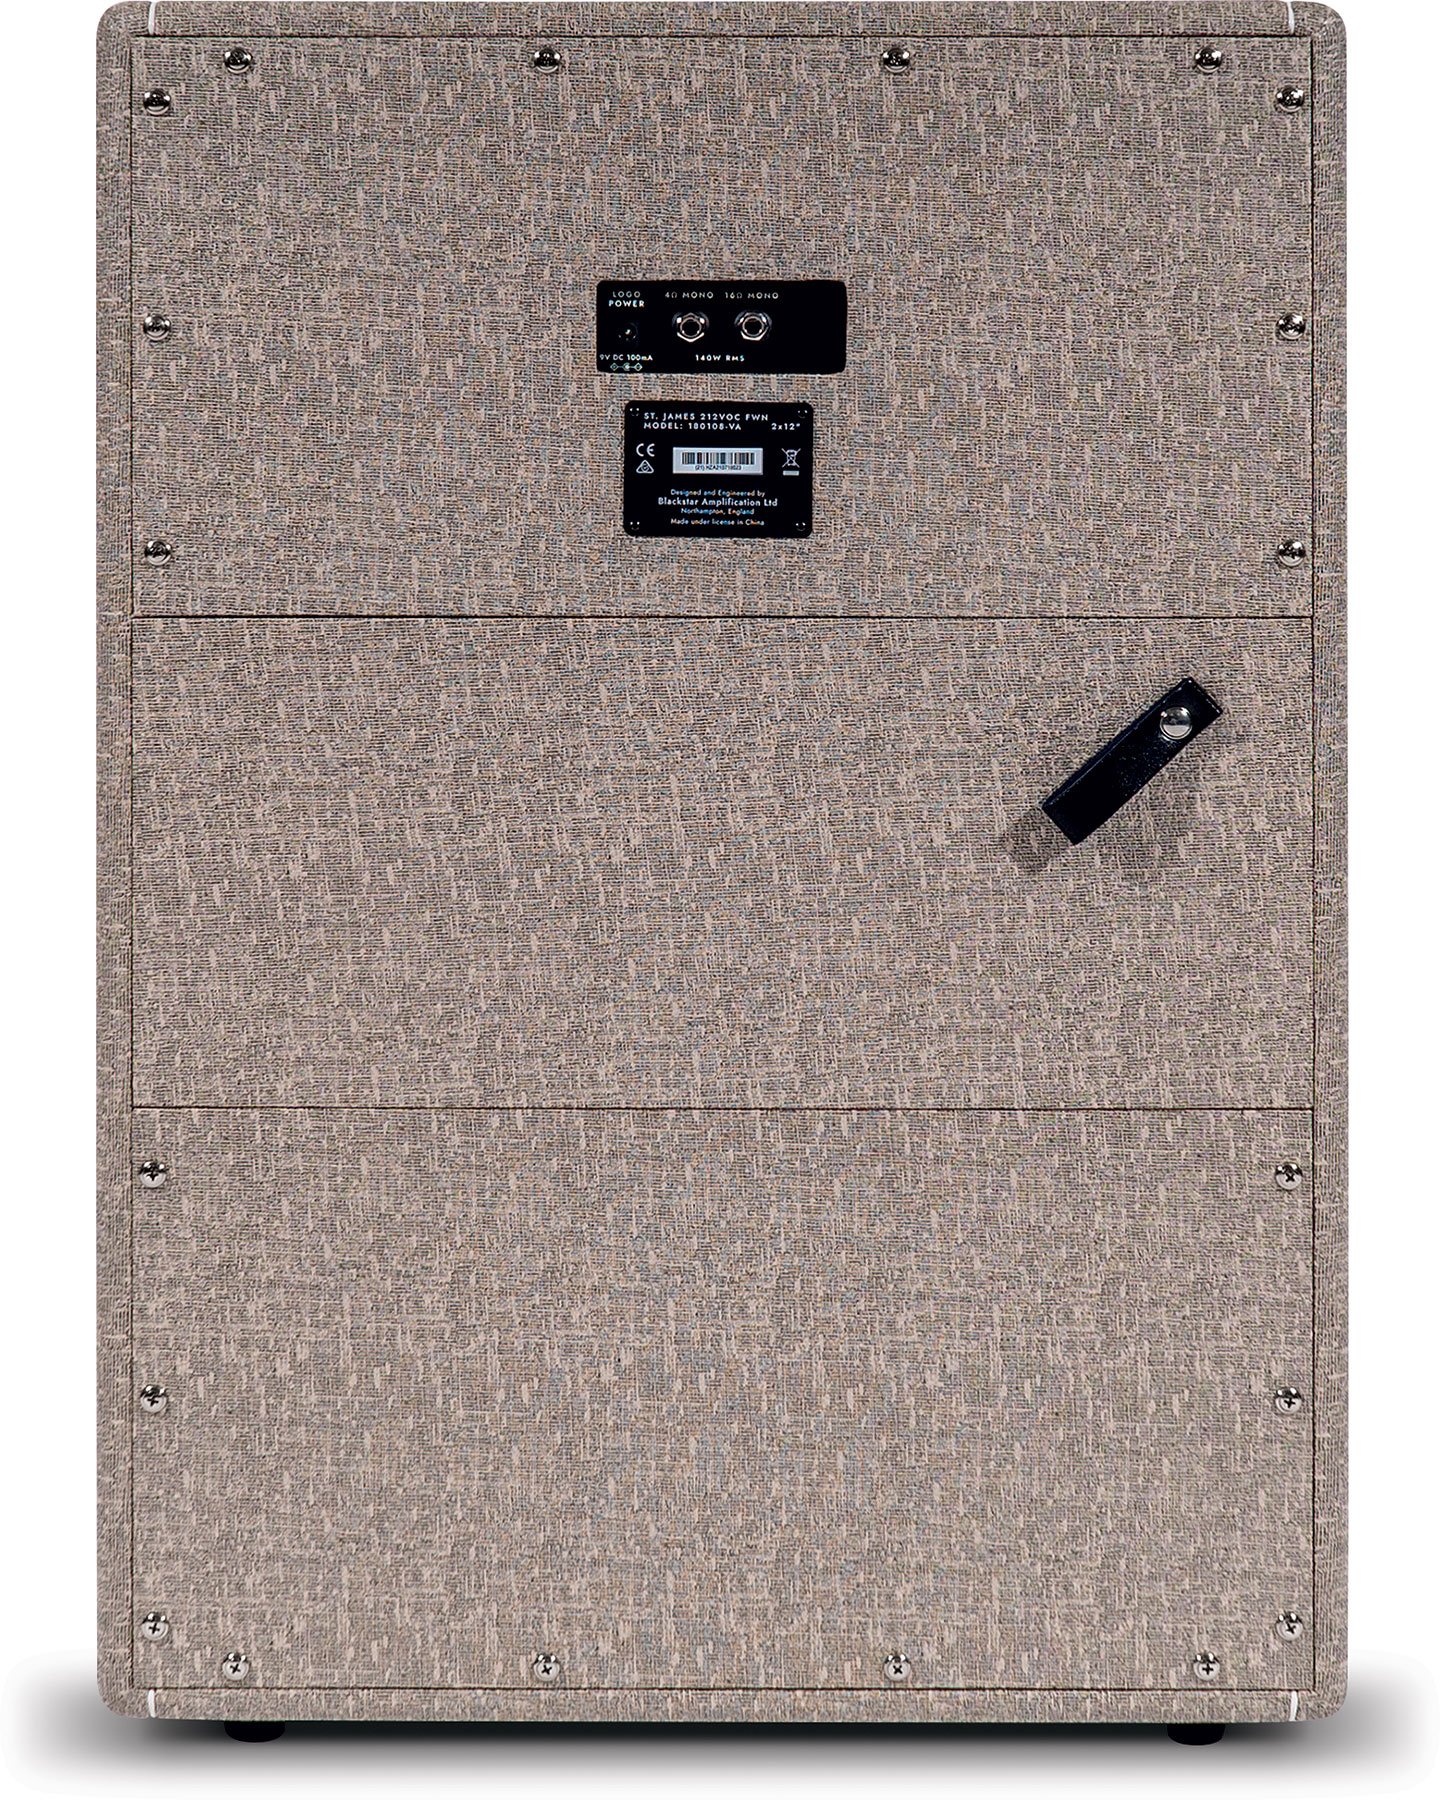 Blackstar St. James 212 Voc 2x12 140w 4/16-ohms Fawn - Cabina amplificador para guitarra eléctrica - Variation 1